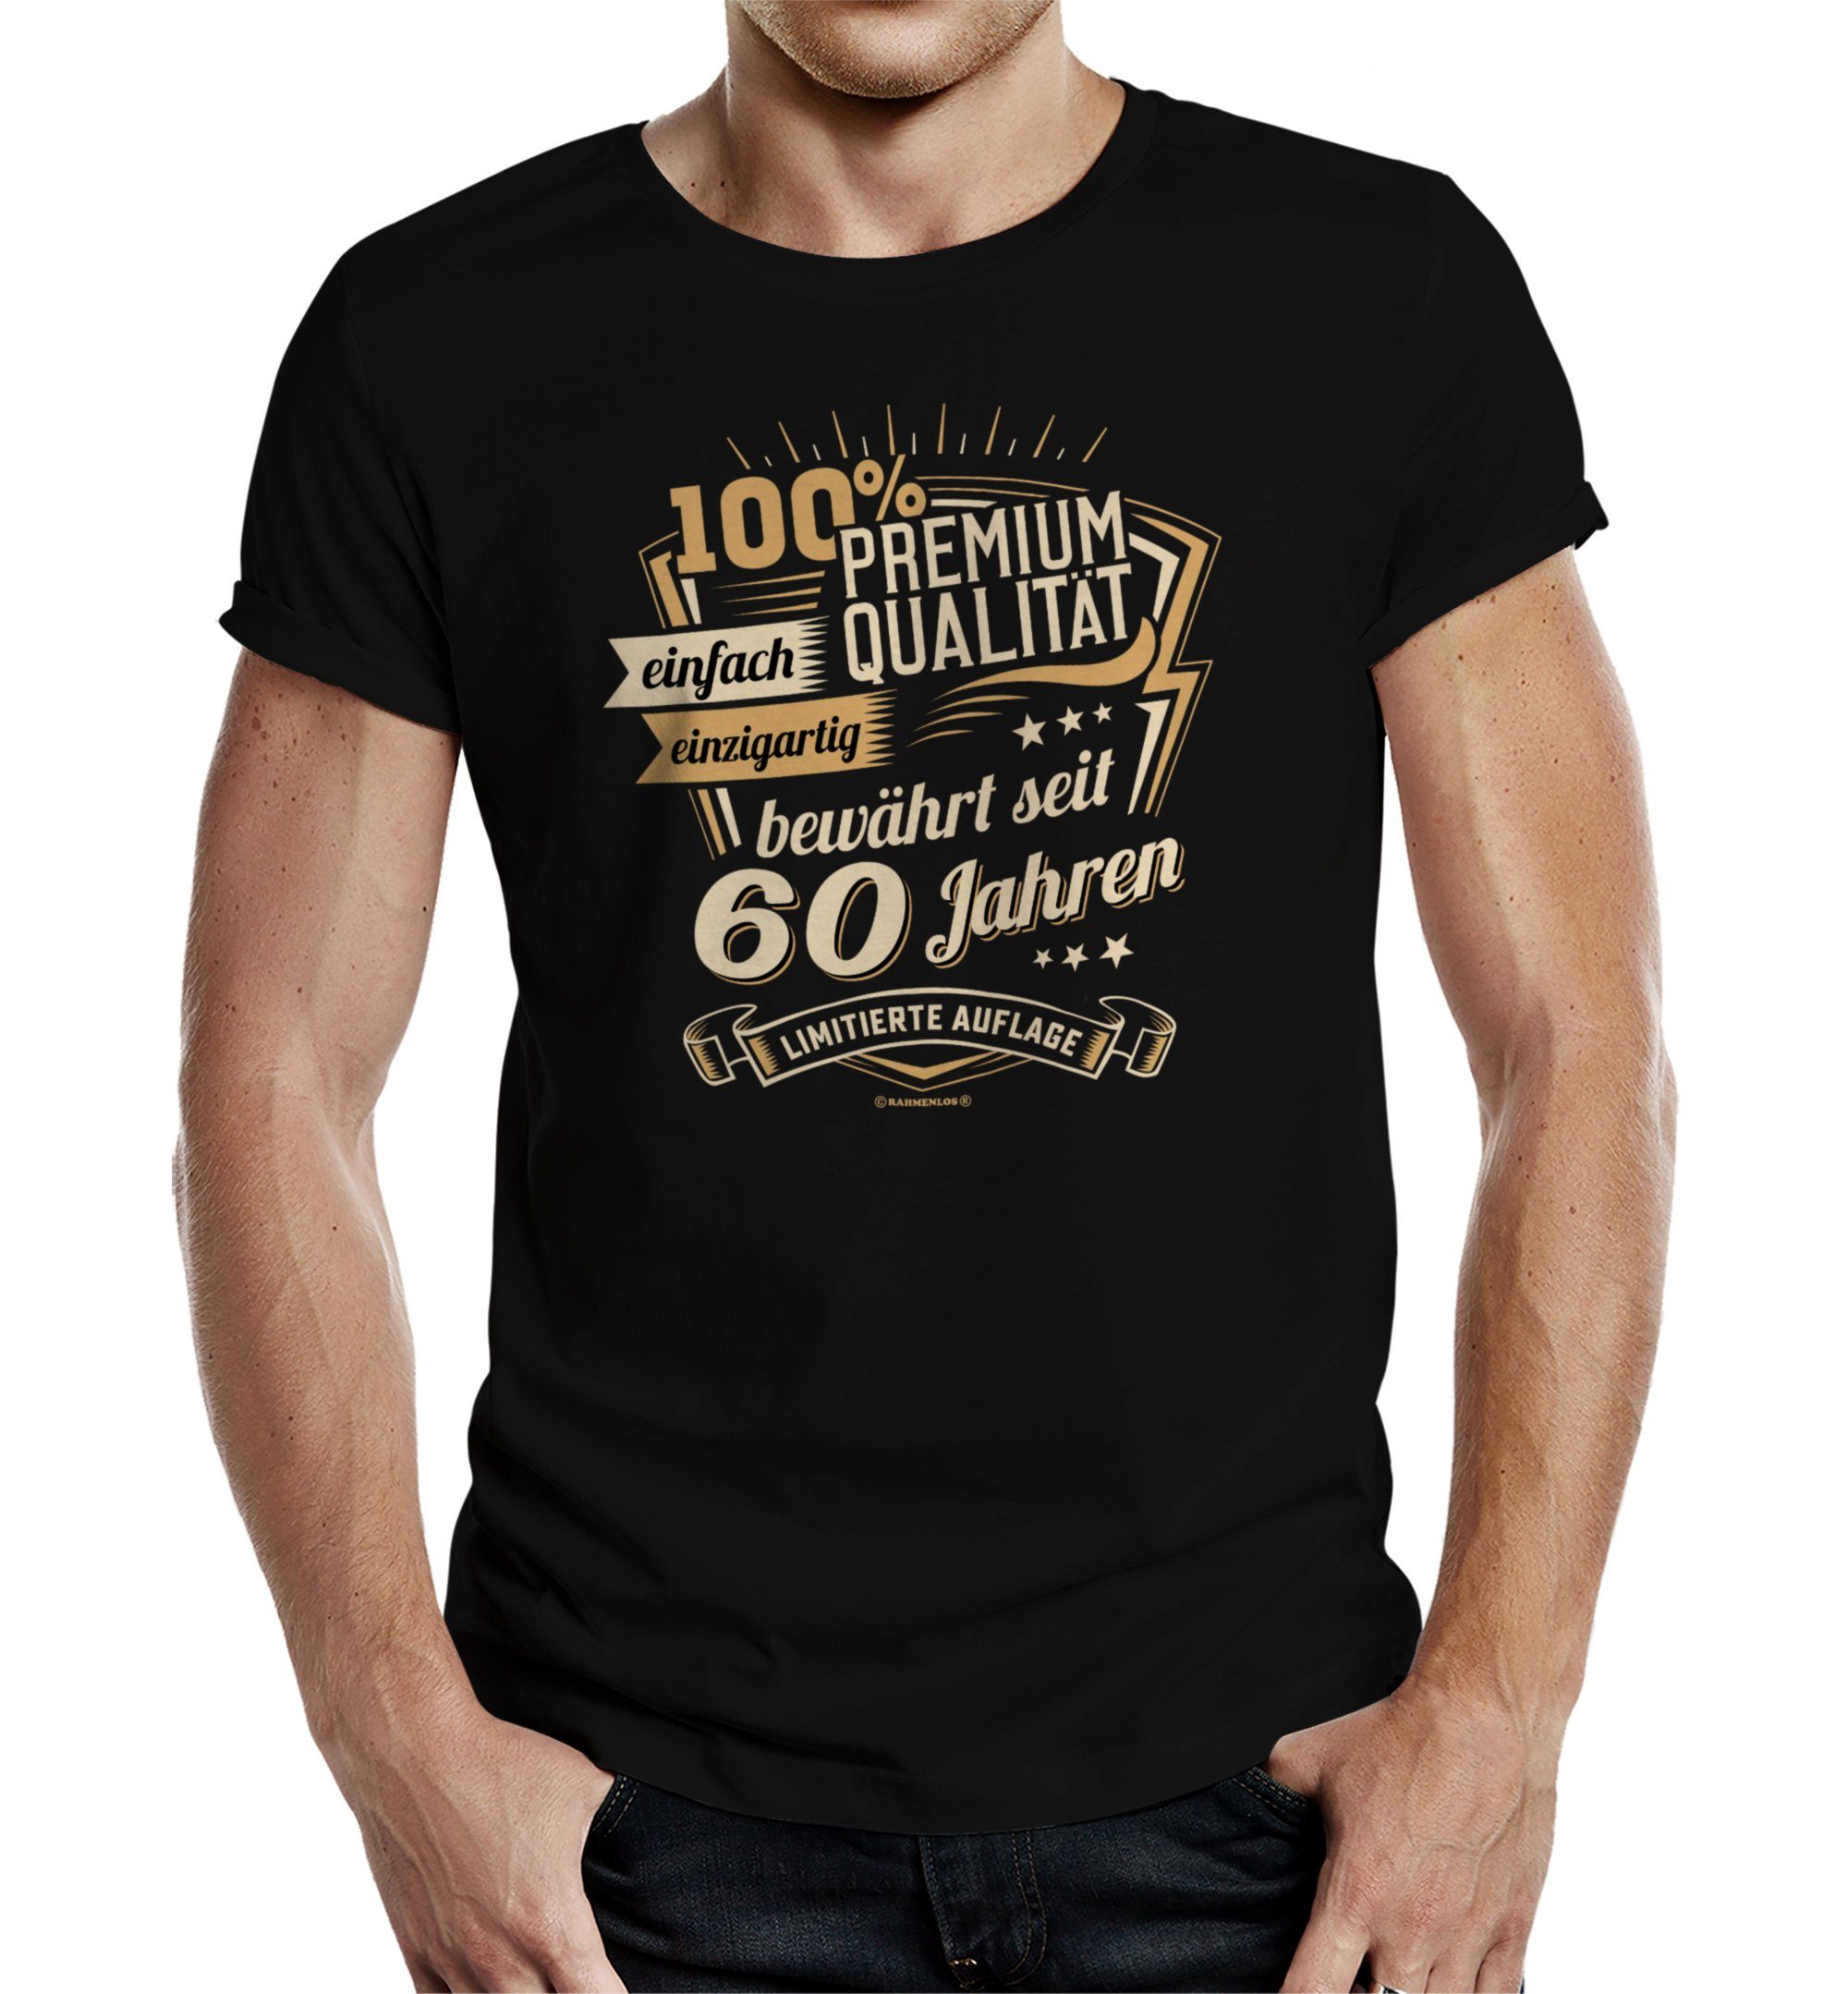 Rahmenlos T-Shirt als Geschenk zum 60. Geburtstag - Premium bewährt seit 60 Jahren